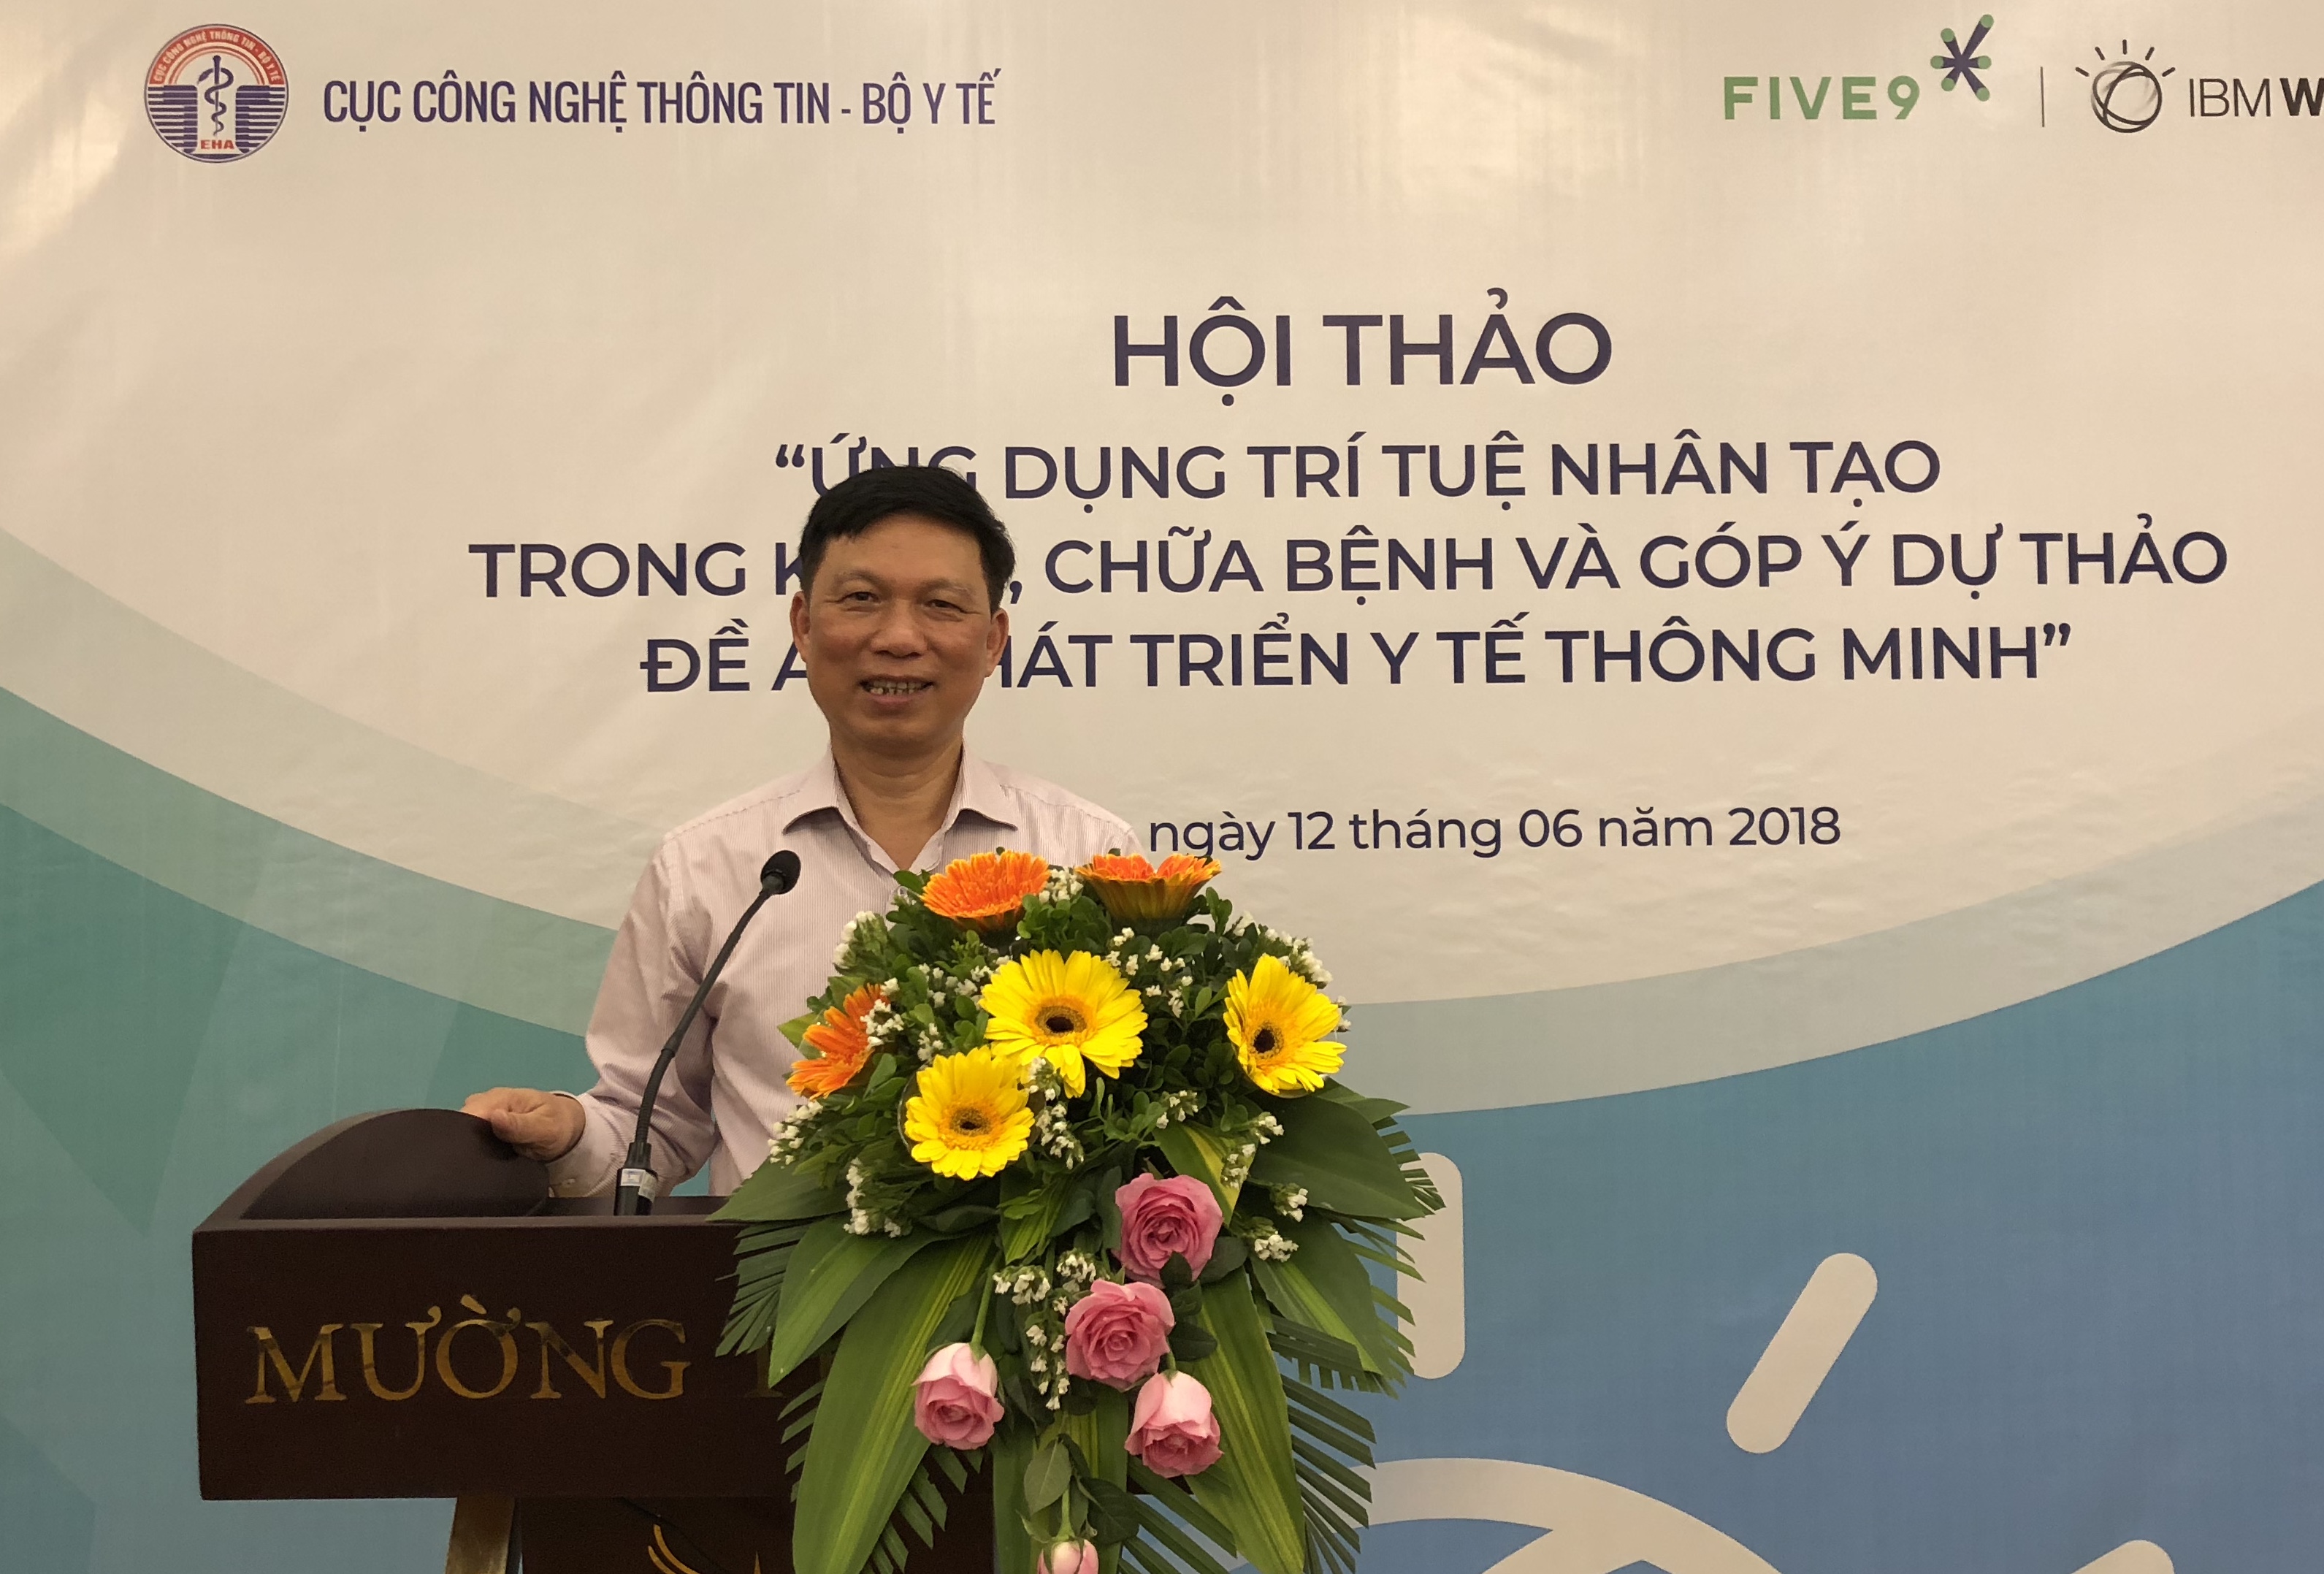 Ông Trần Quý Tường, Cục trưởng Cục Công nghệ thông tin, Bộ Y tế tại Hội thảo.